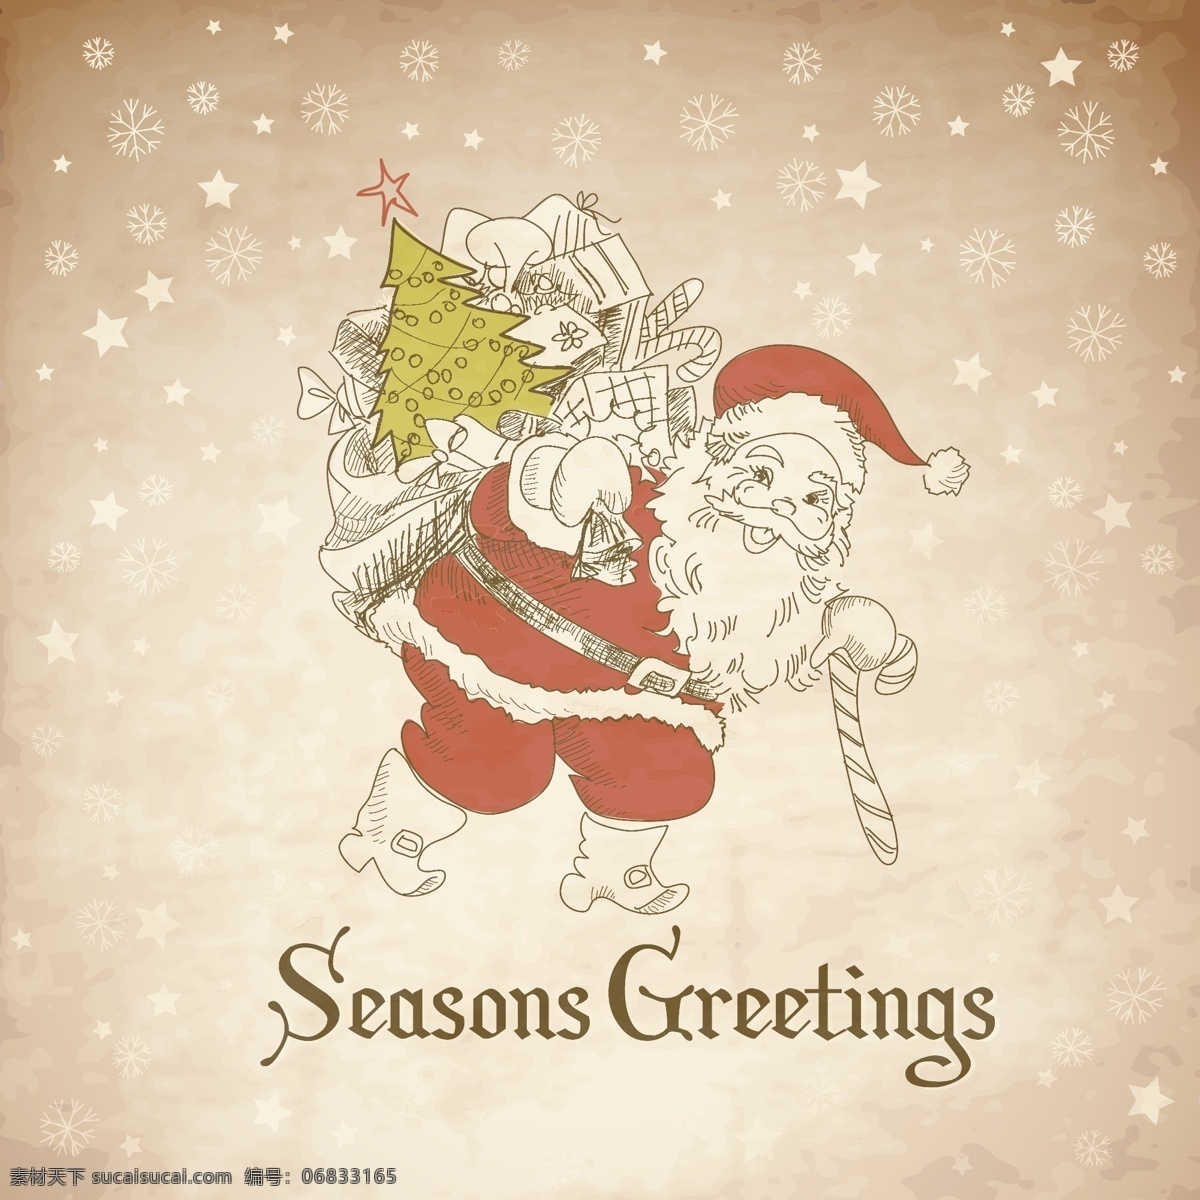 圣诞老人 线 稿 卡片 矢量 圣诞节贺卡 手绘头像 雪花底纹 线稿卡片